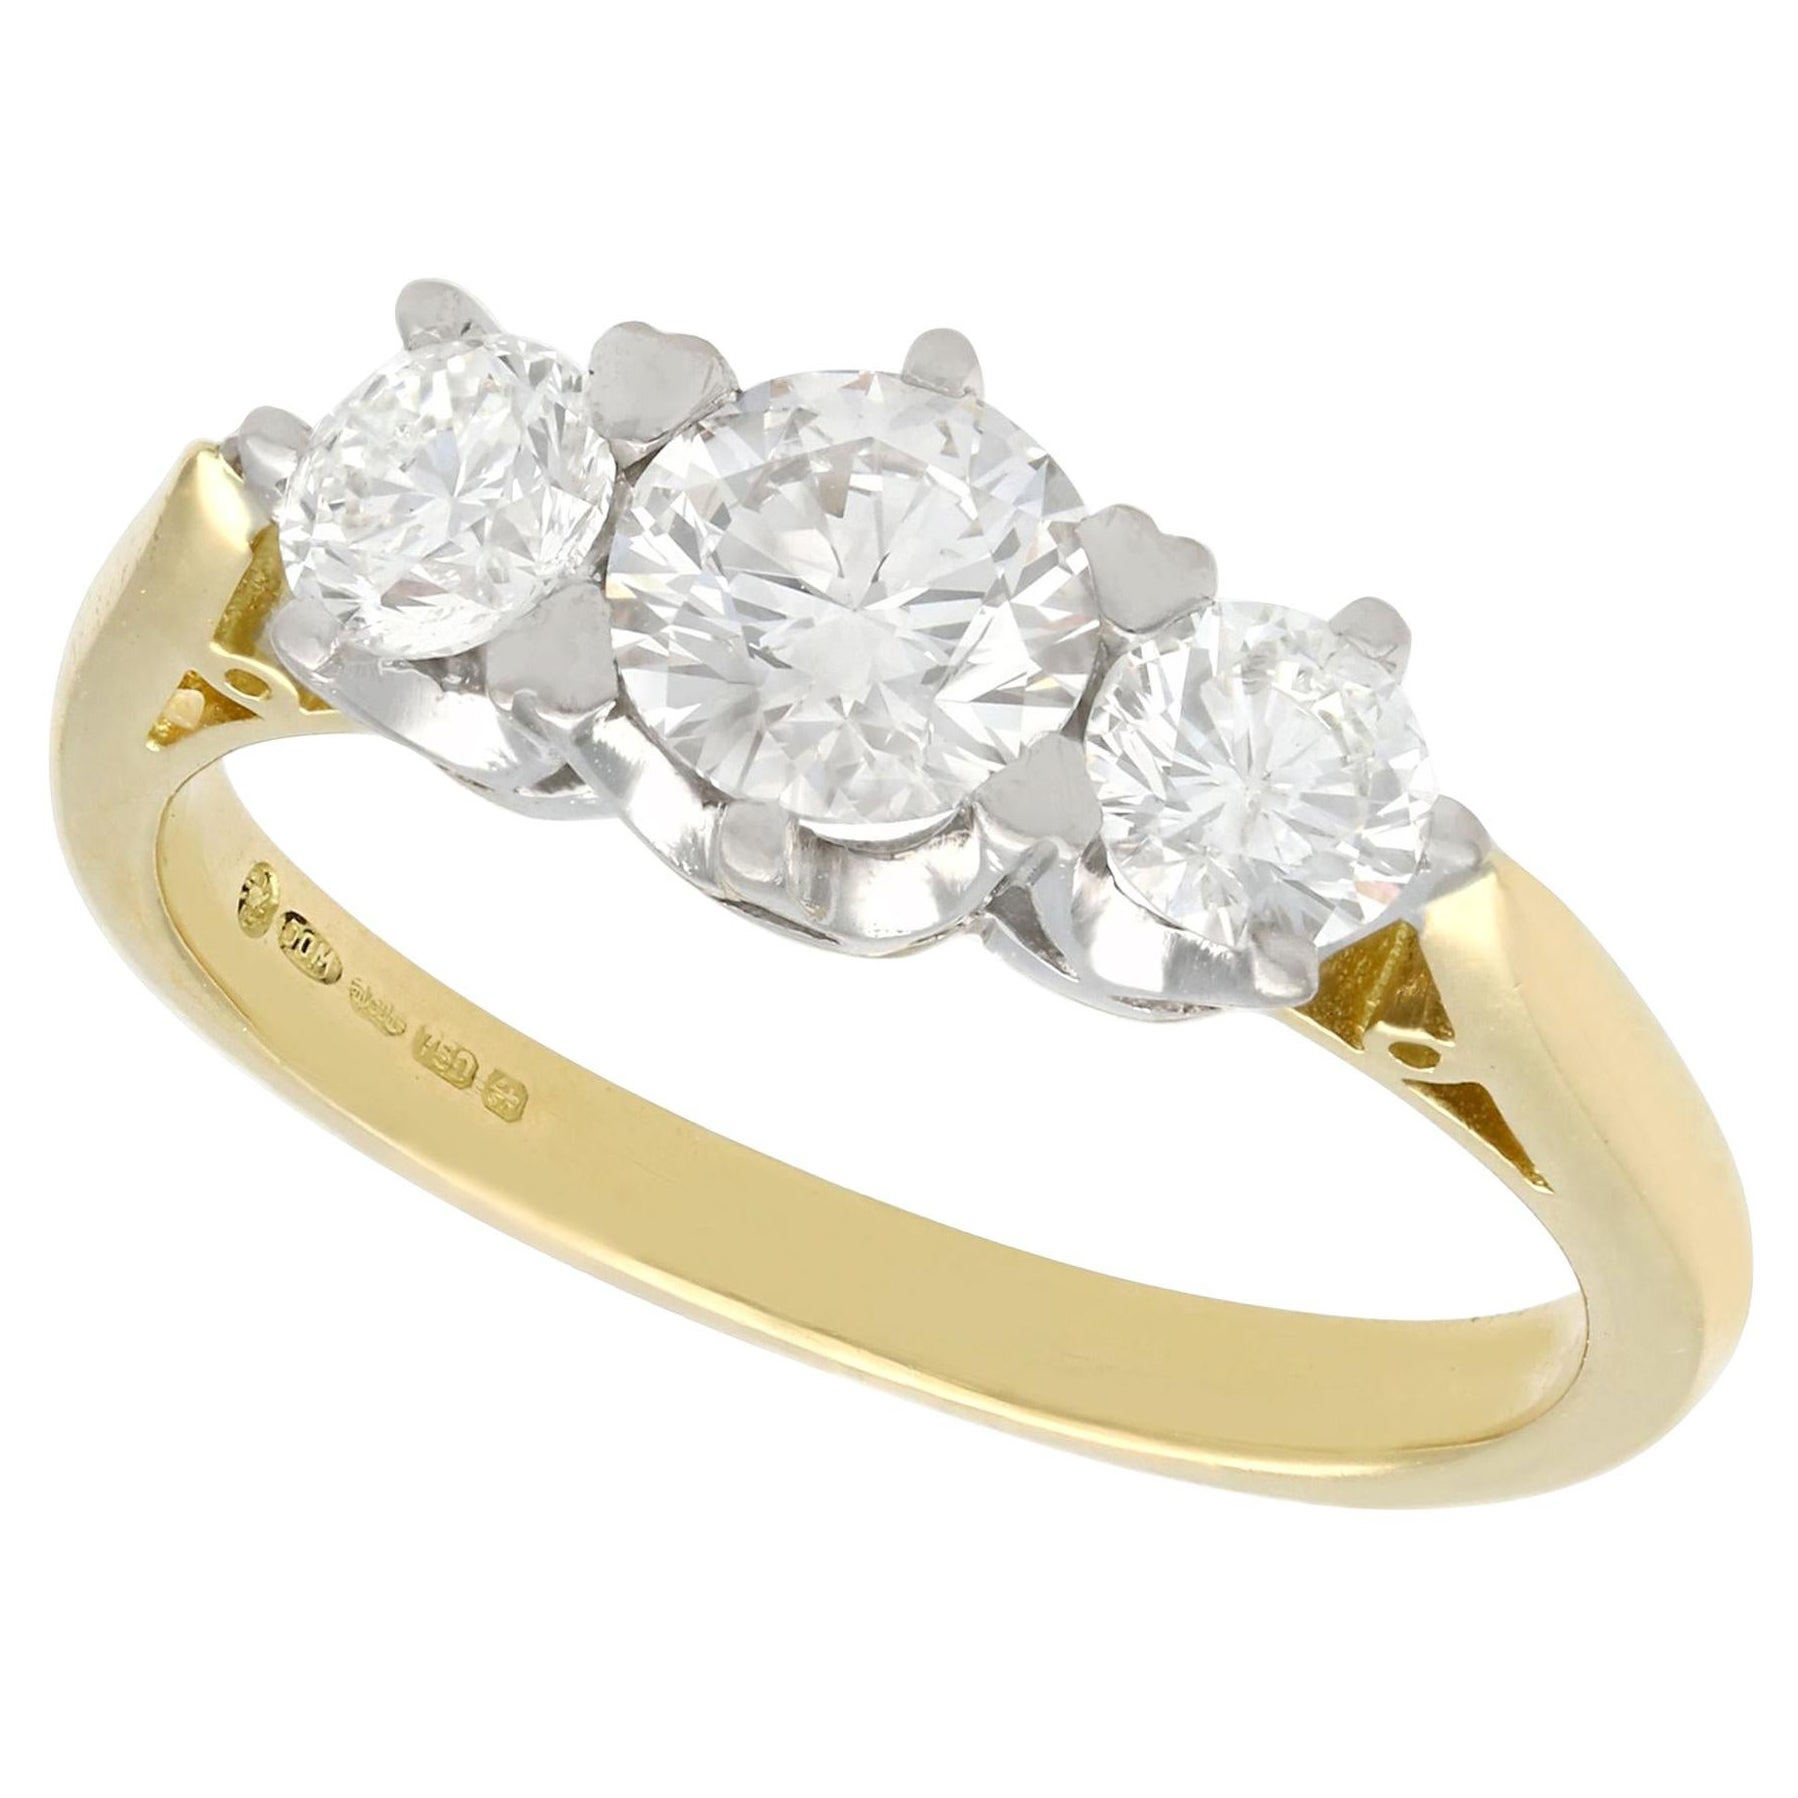 Verlobungsring aus 18 Karat Gelbgold mit 1,18 Karat Diamanten und drei Steinen